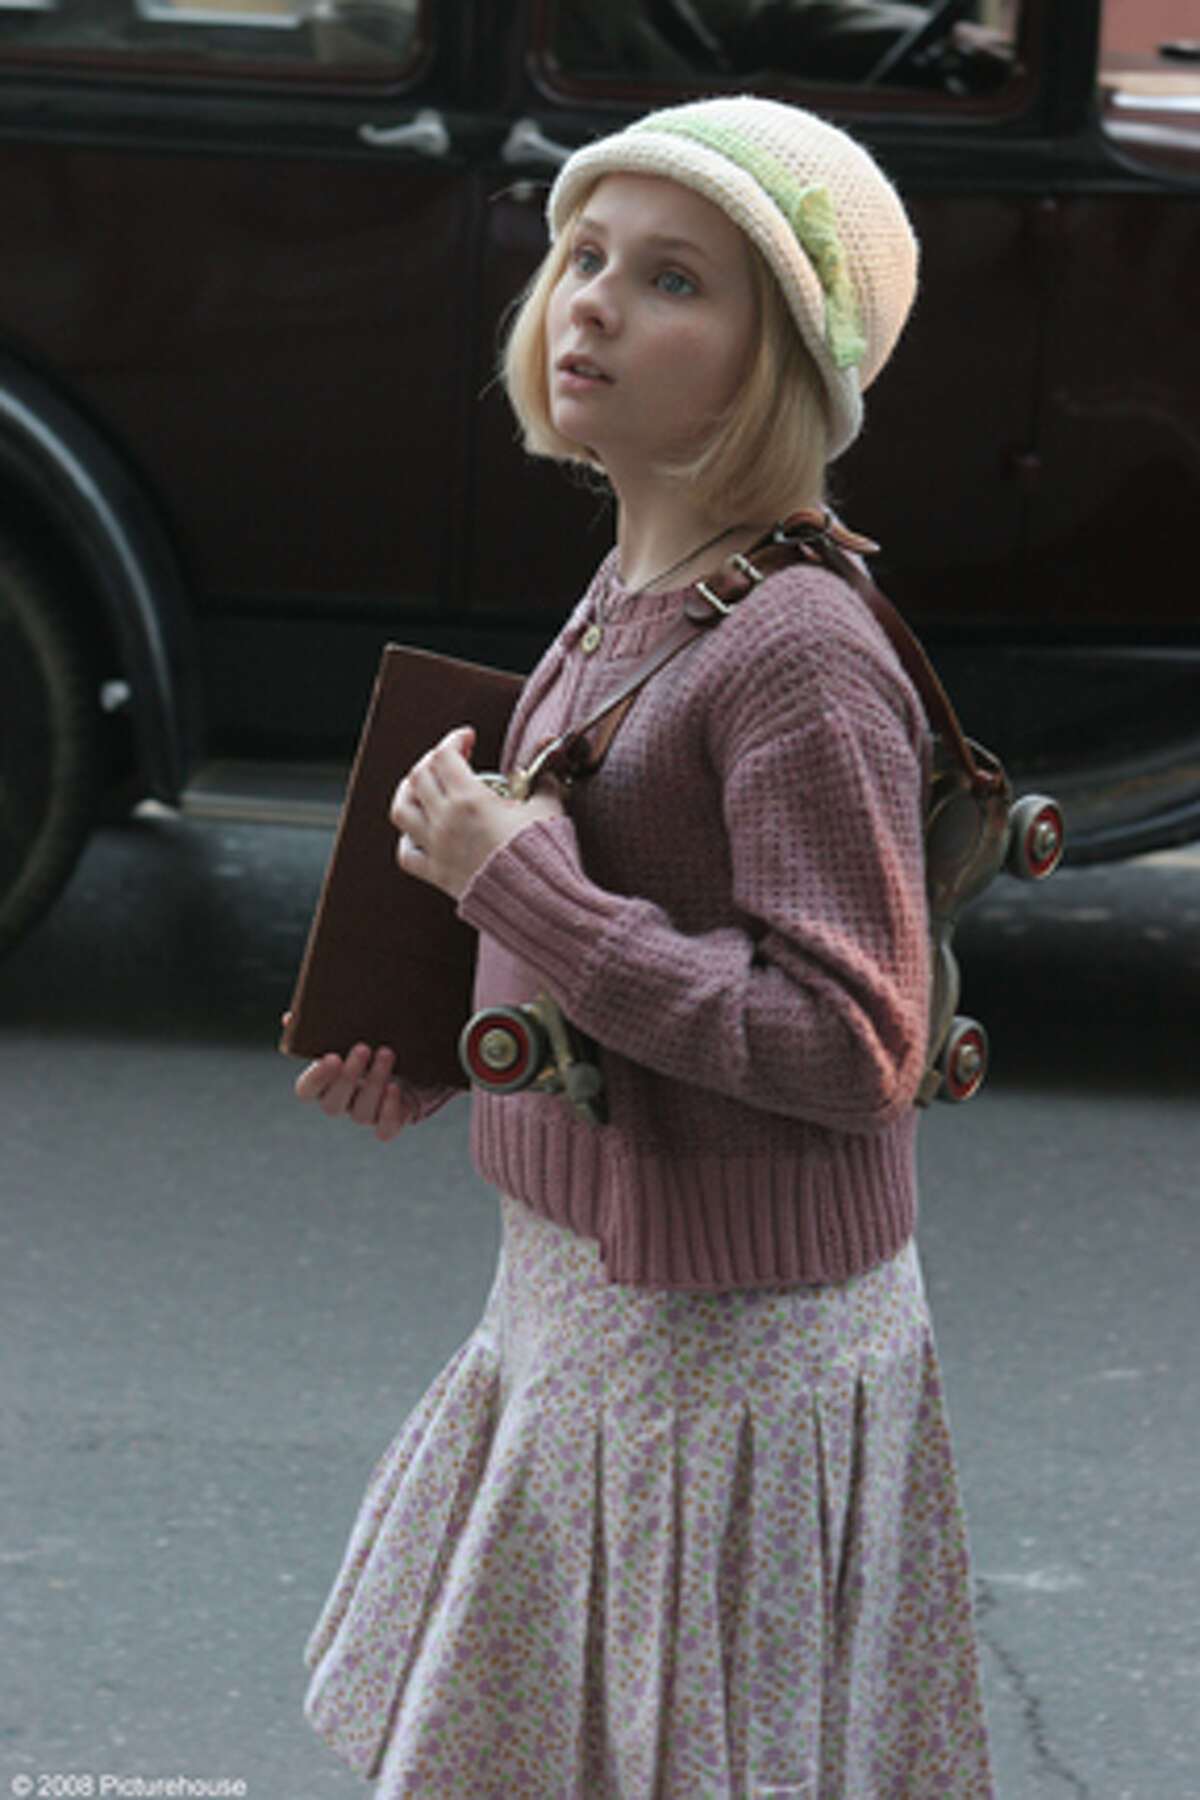 A scene from the film "Kit Kittredge: An American Girl."